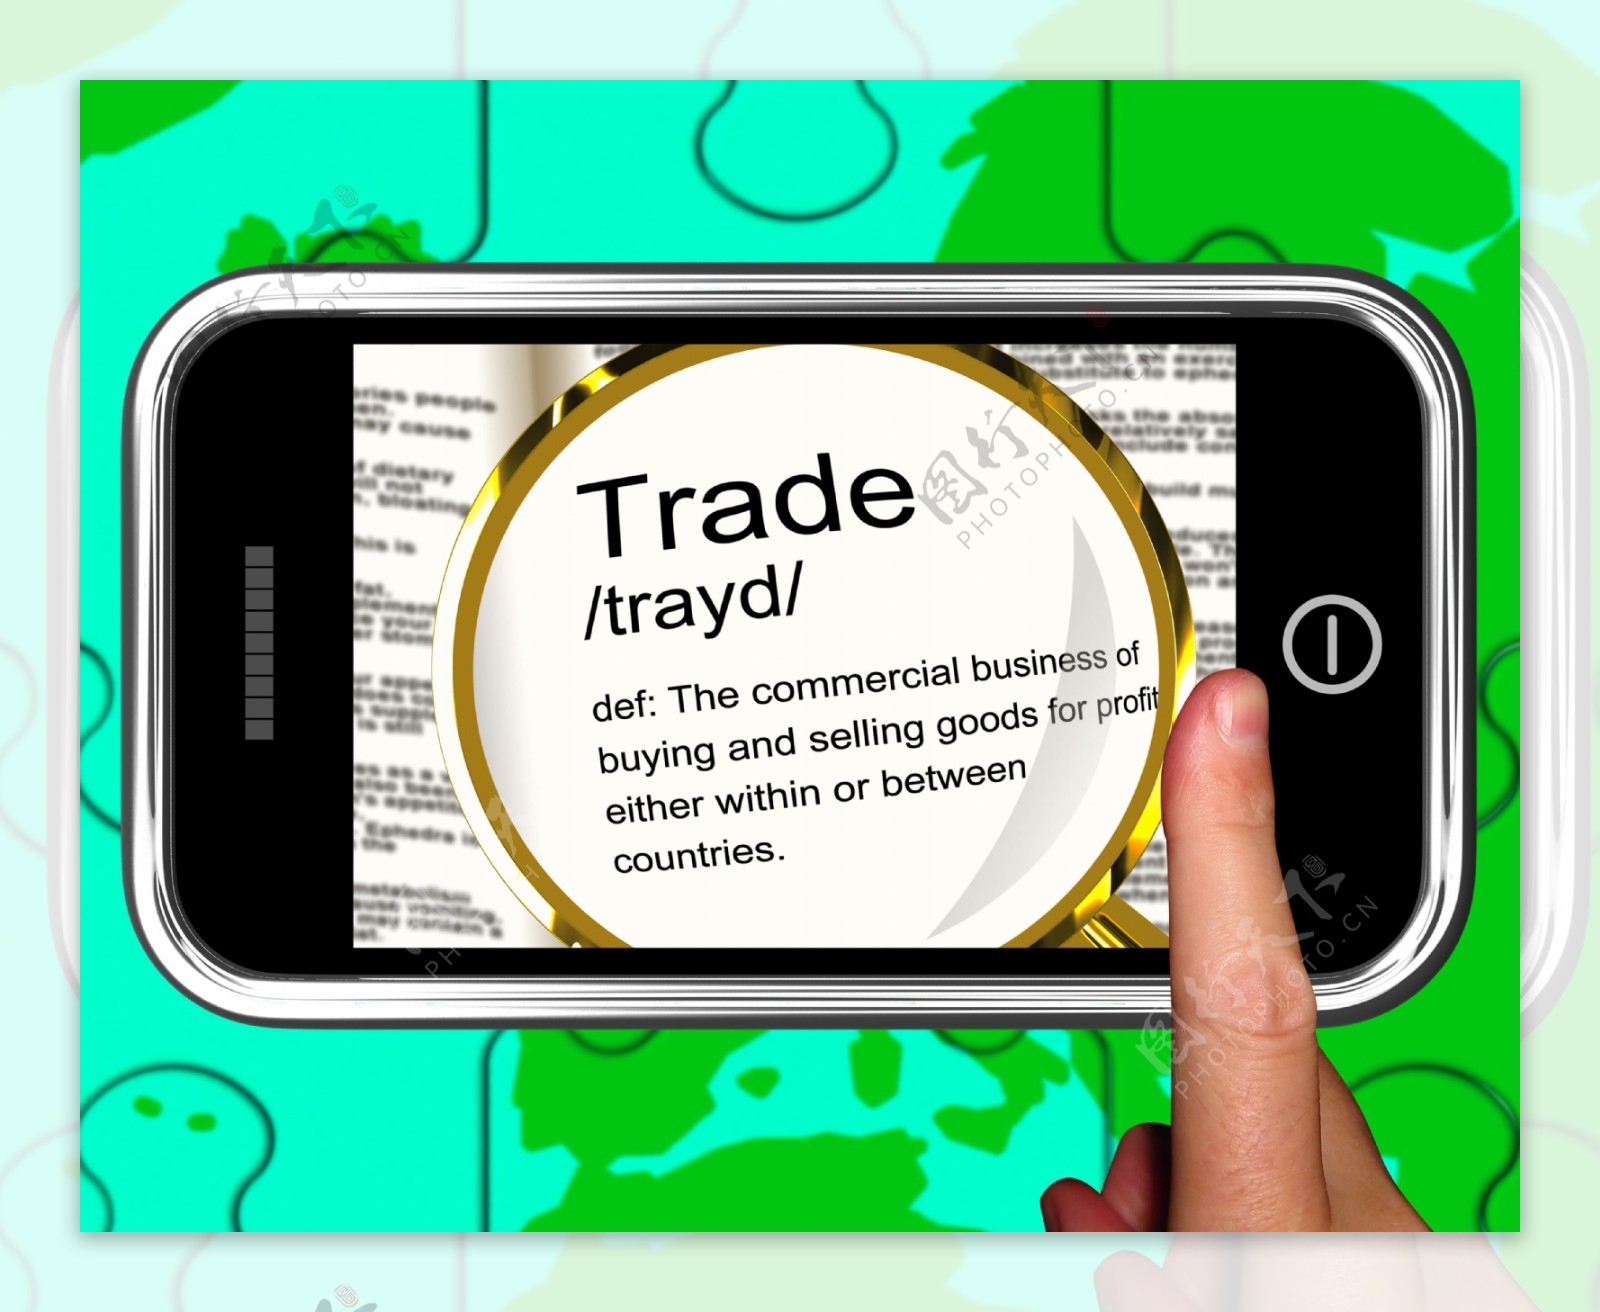 在智能手机的显示出口贸易的定义